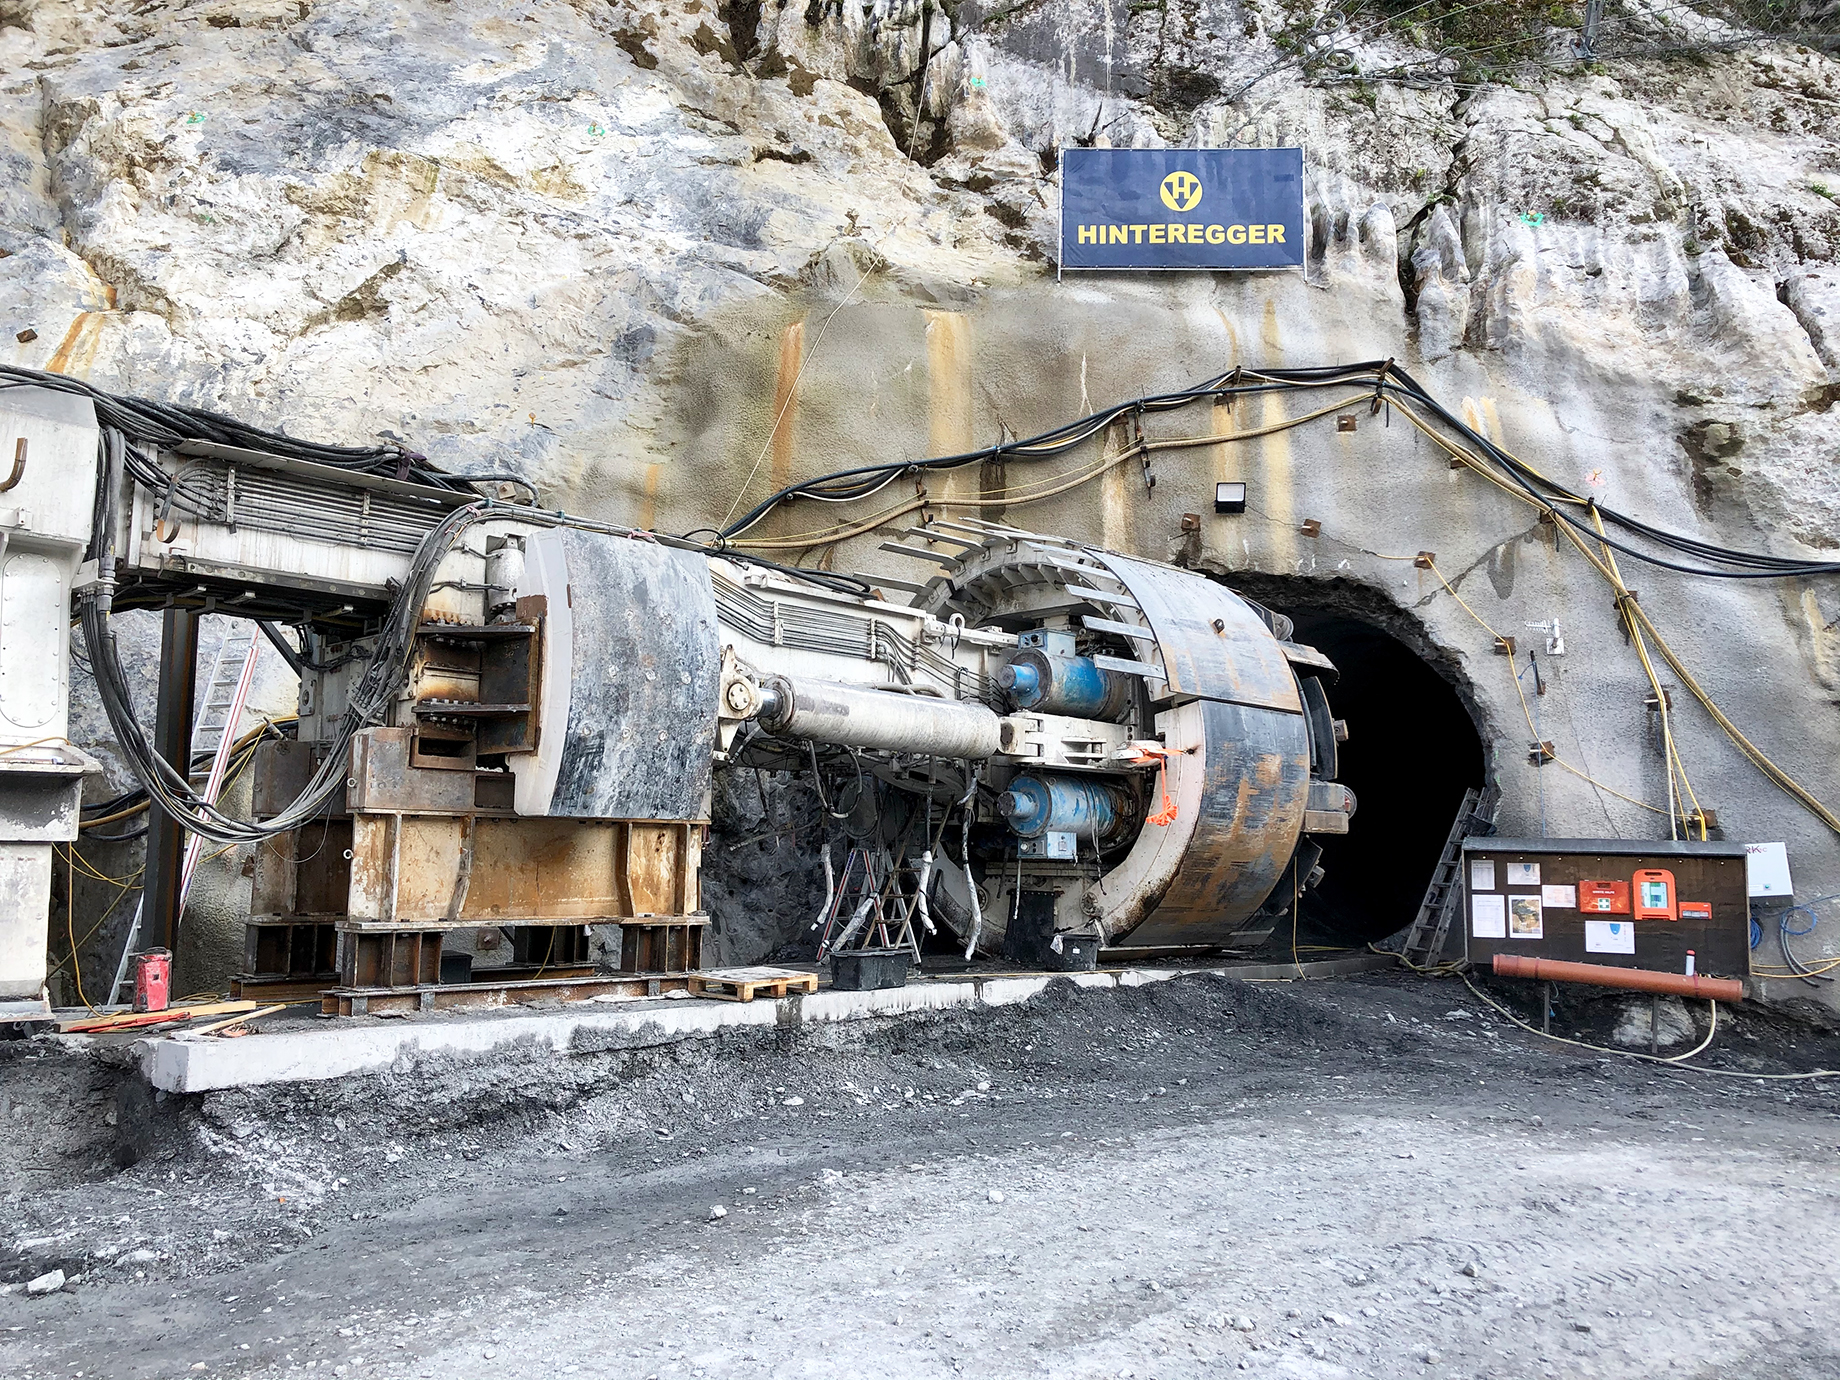 Foto: Tunnelbohrmaschine unmittelbar vor einem von Kabeln umgebenen Stolleneingang im Felsmassiv, darüber ein Hinteregger-Transparent, daneben eine Anschlagtafel mit verschiedenen Aushängen